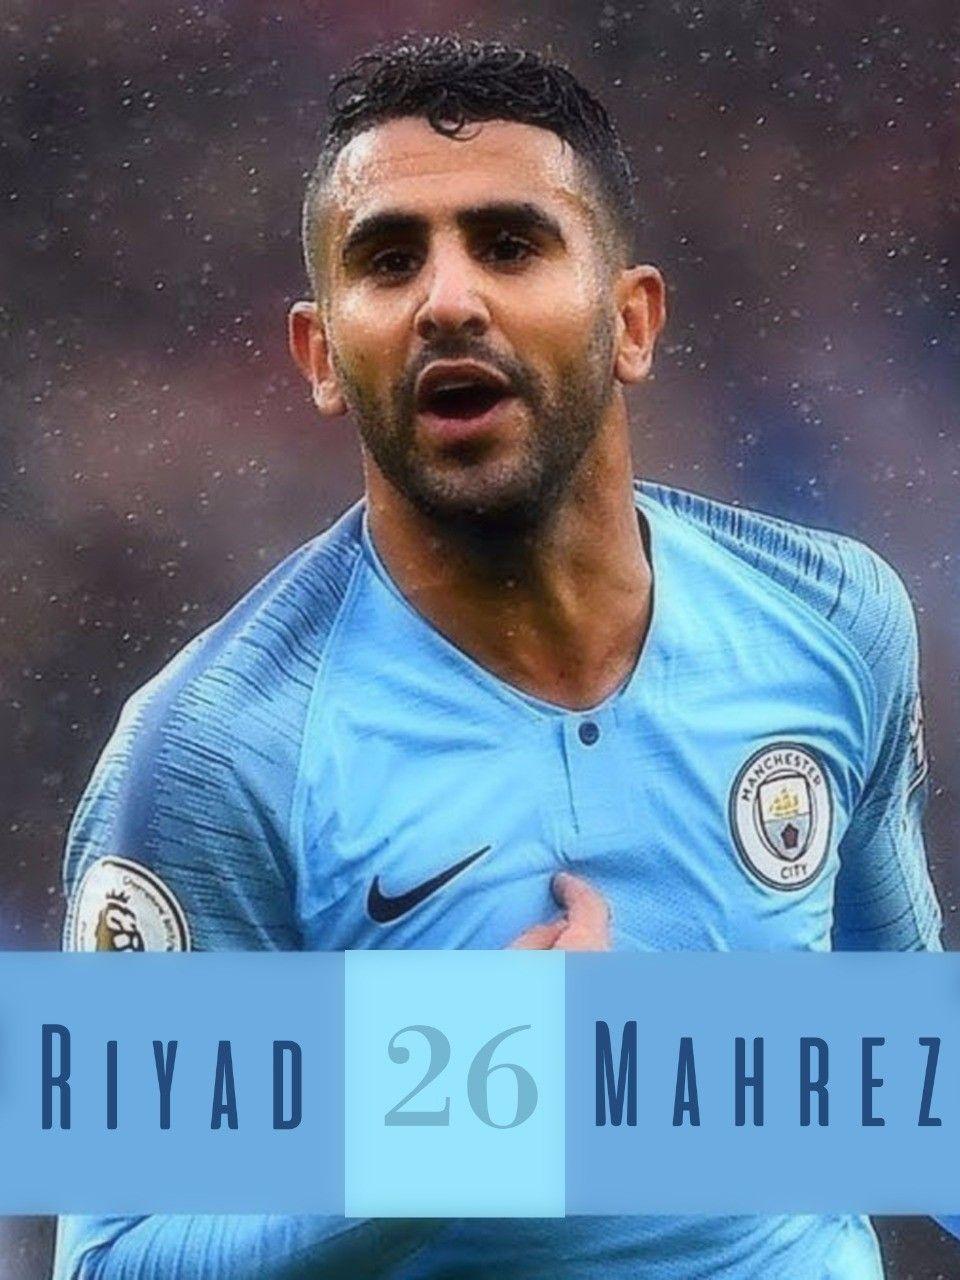 Riyad Mahrez tab wallpaper. Man City. Manchester City, Mens